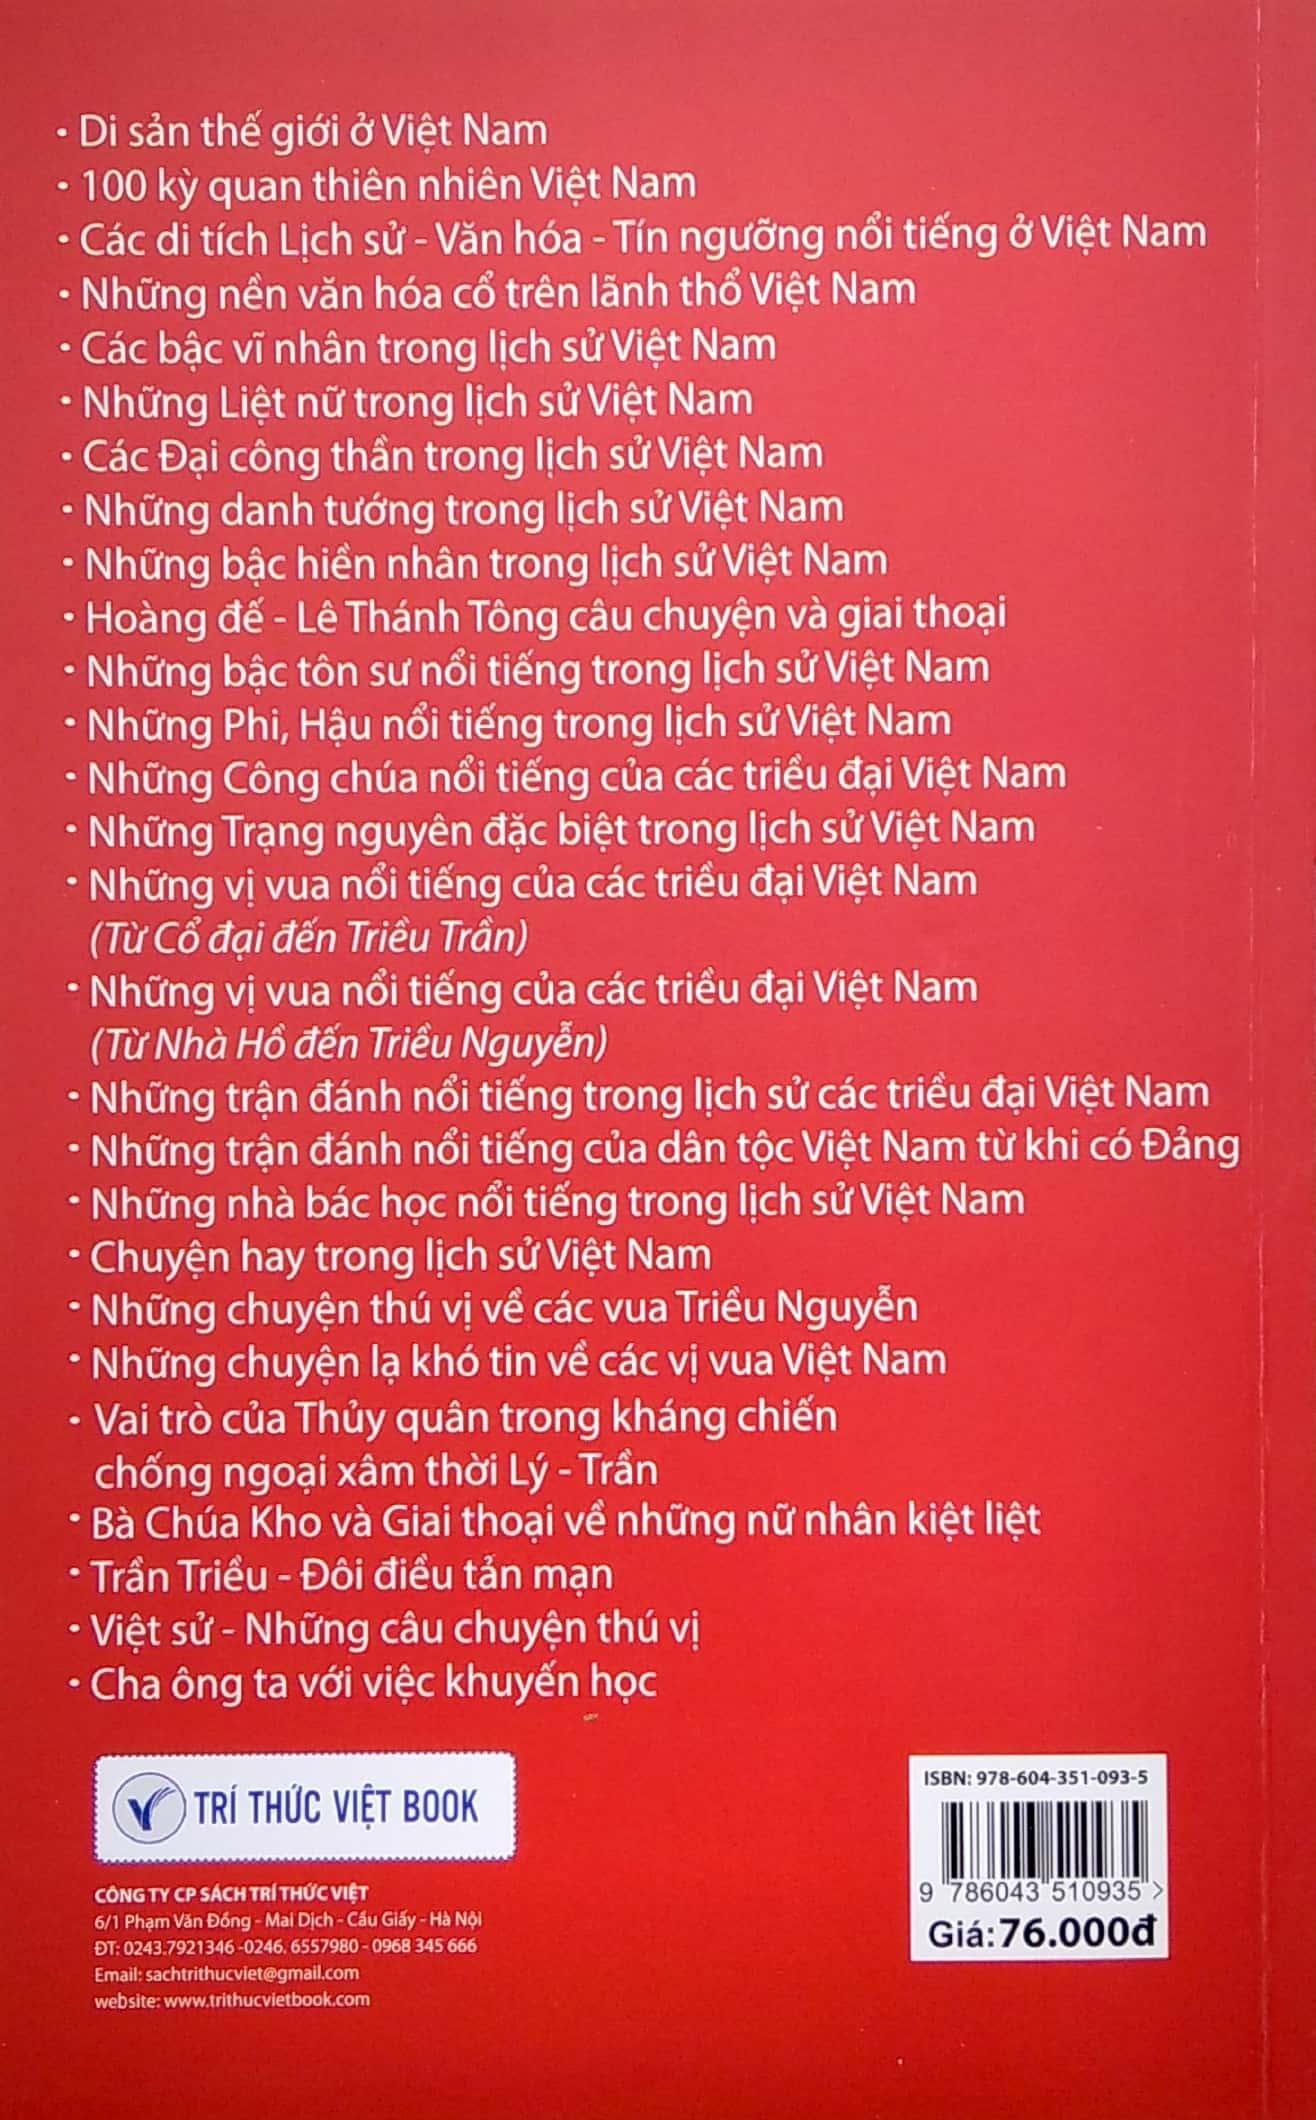 Nữ Nhân Nước Việt Qua Một Số Huyền Tích Và Lịch Sử